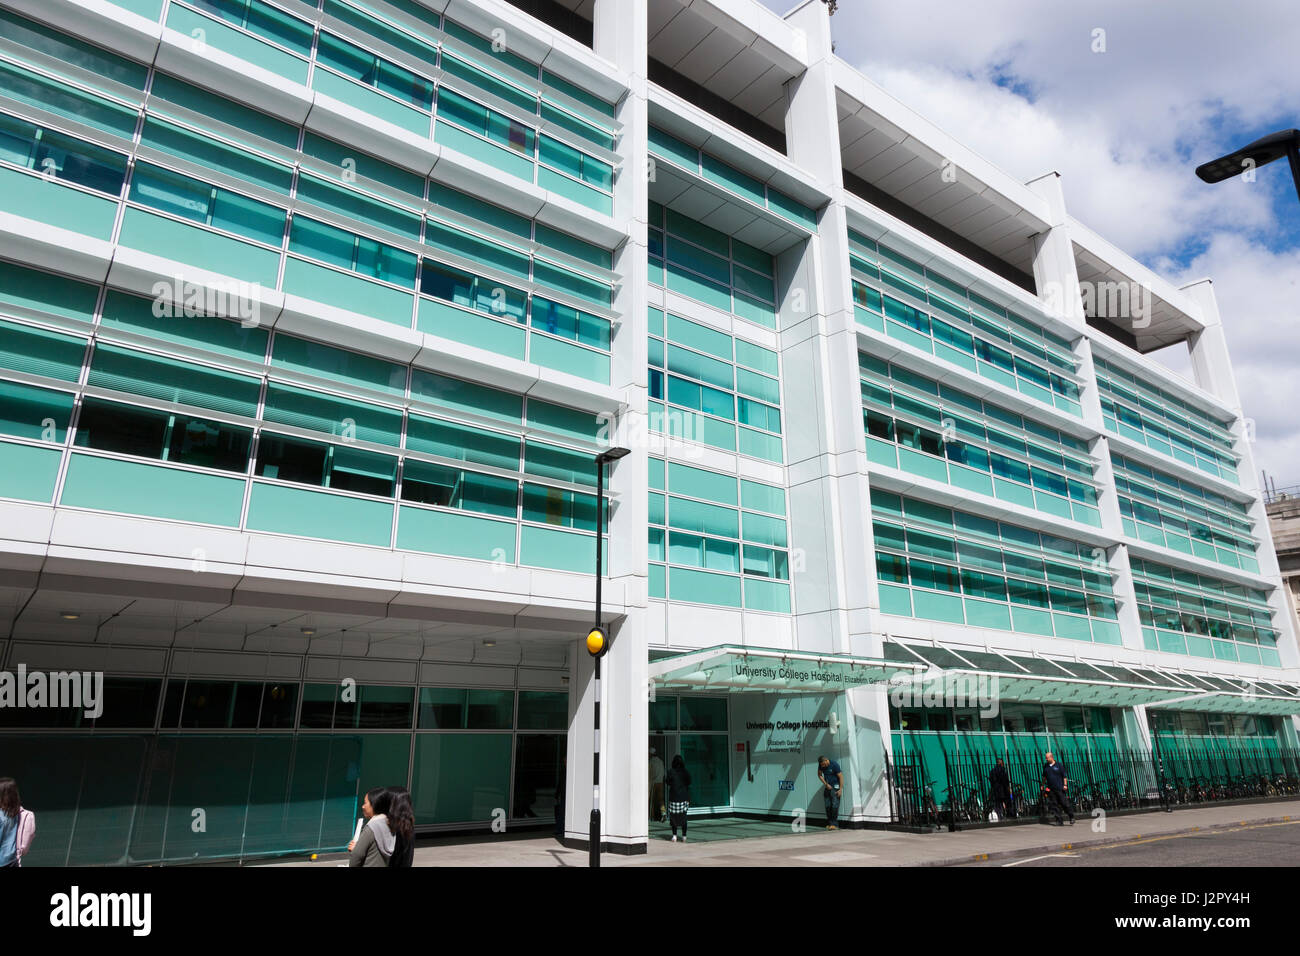 La parte delantera exterior y entrada del University College Hospital de Londres; el Elizabeth Garret Anderson ala. Día soleado con el cielo azul. En el Reino Unido. Foto de stock